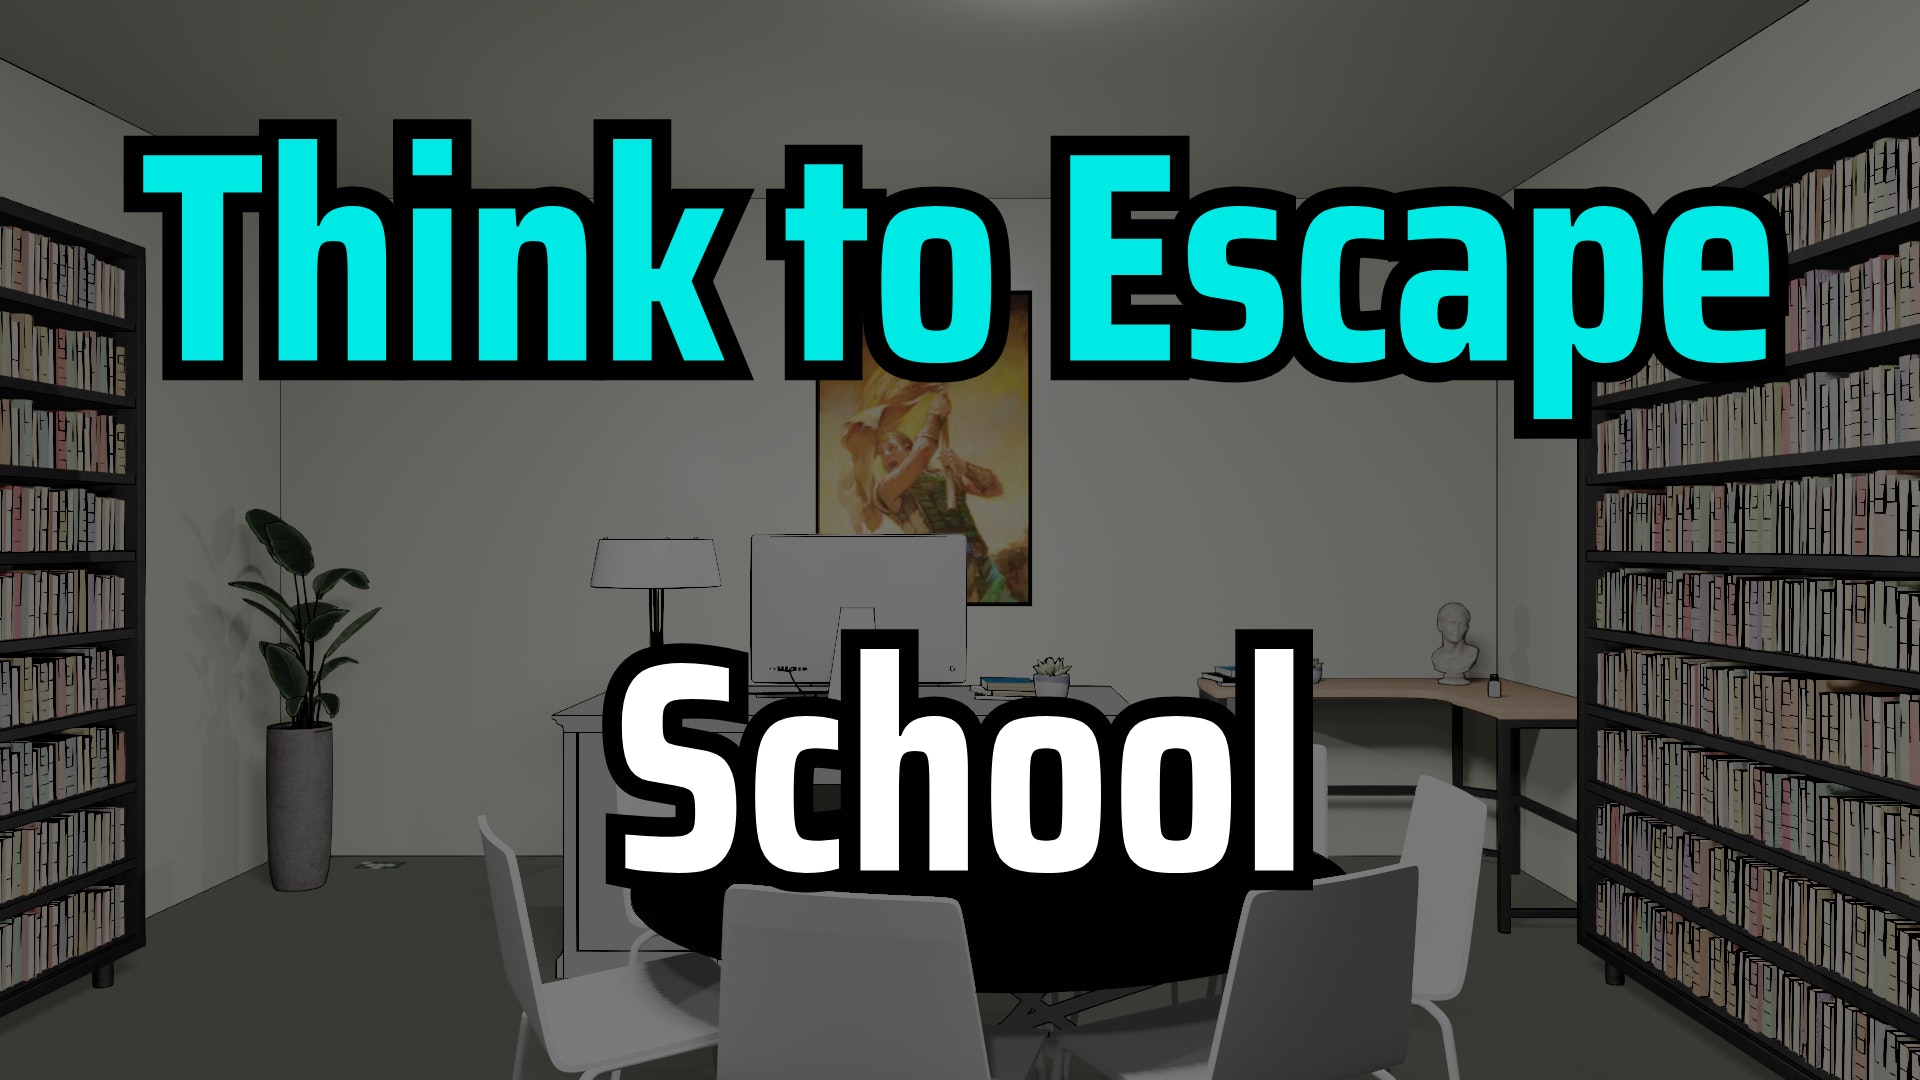 Escape rooms virtuais para descomprimir dentro de casa